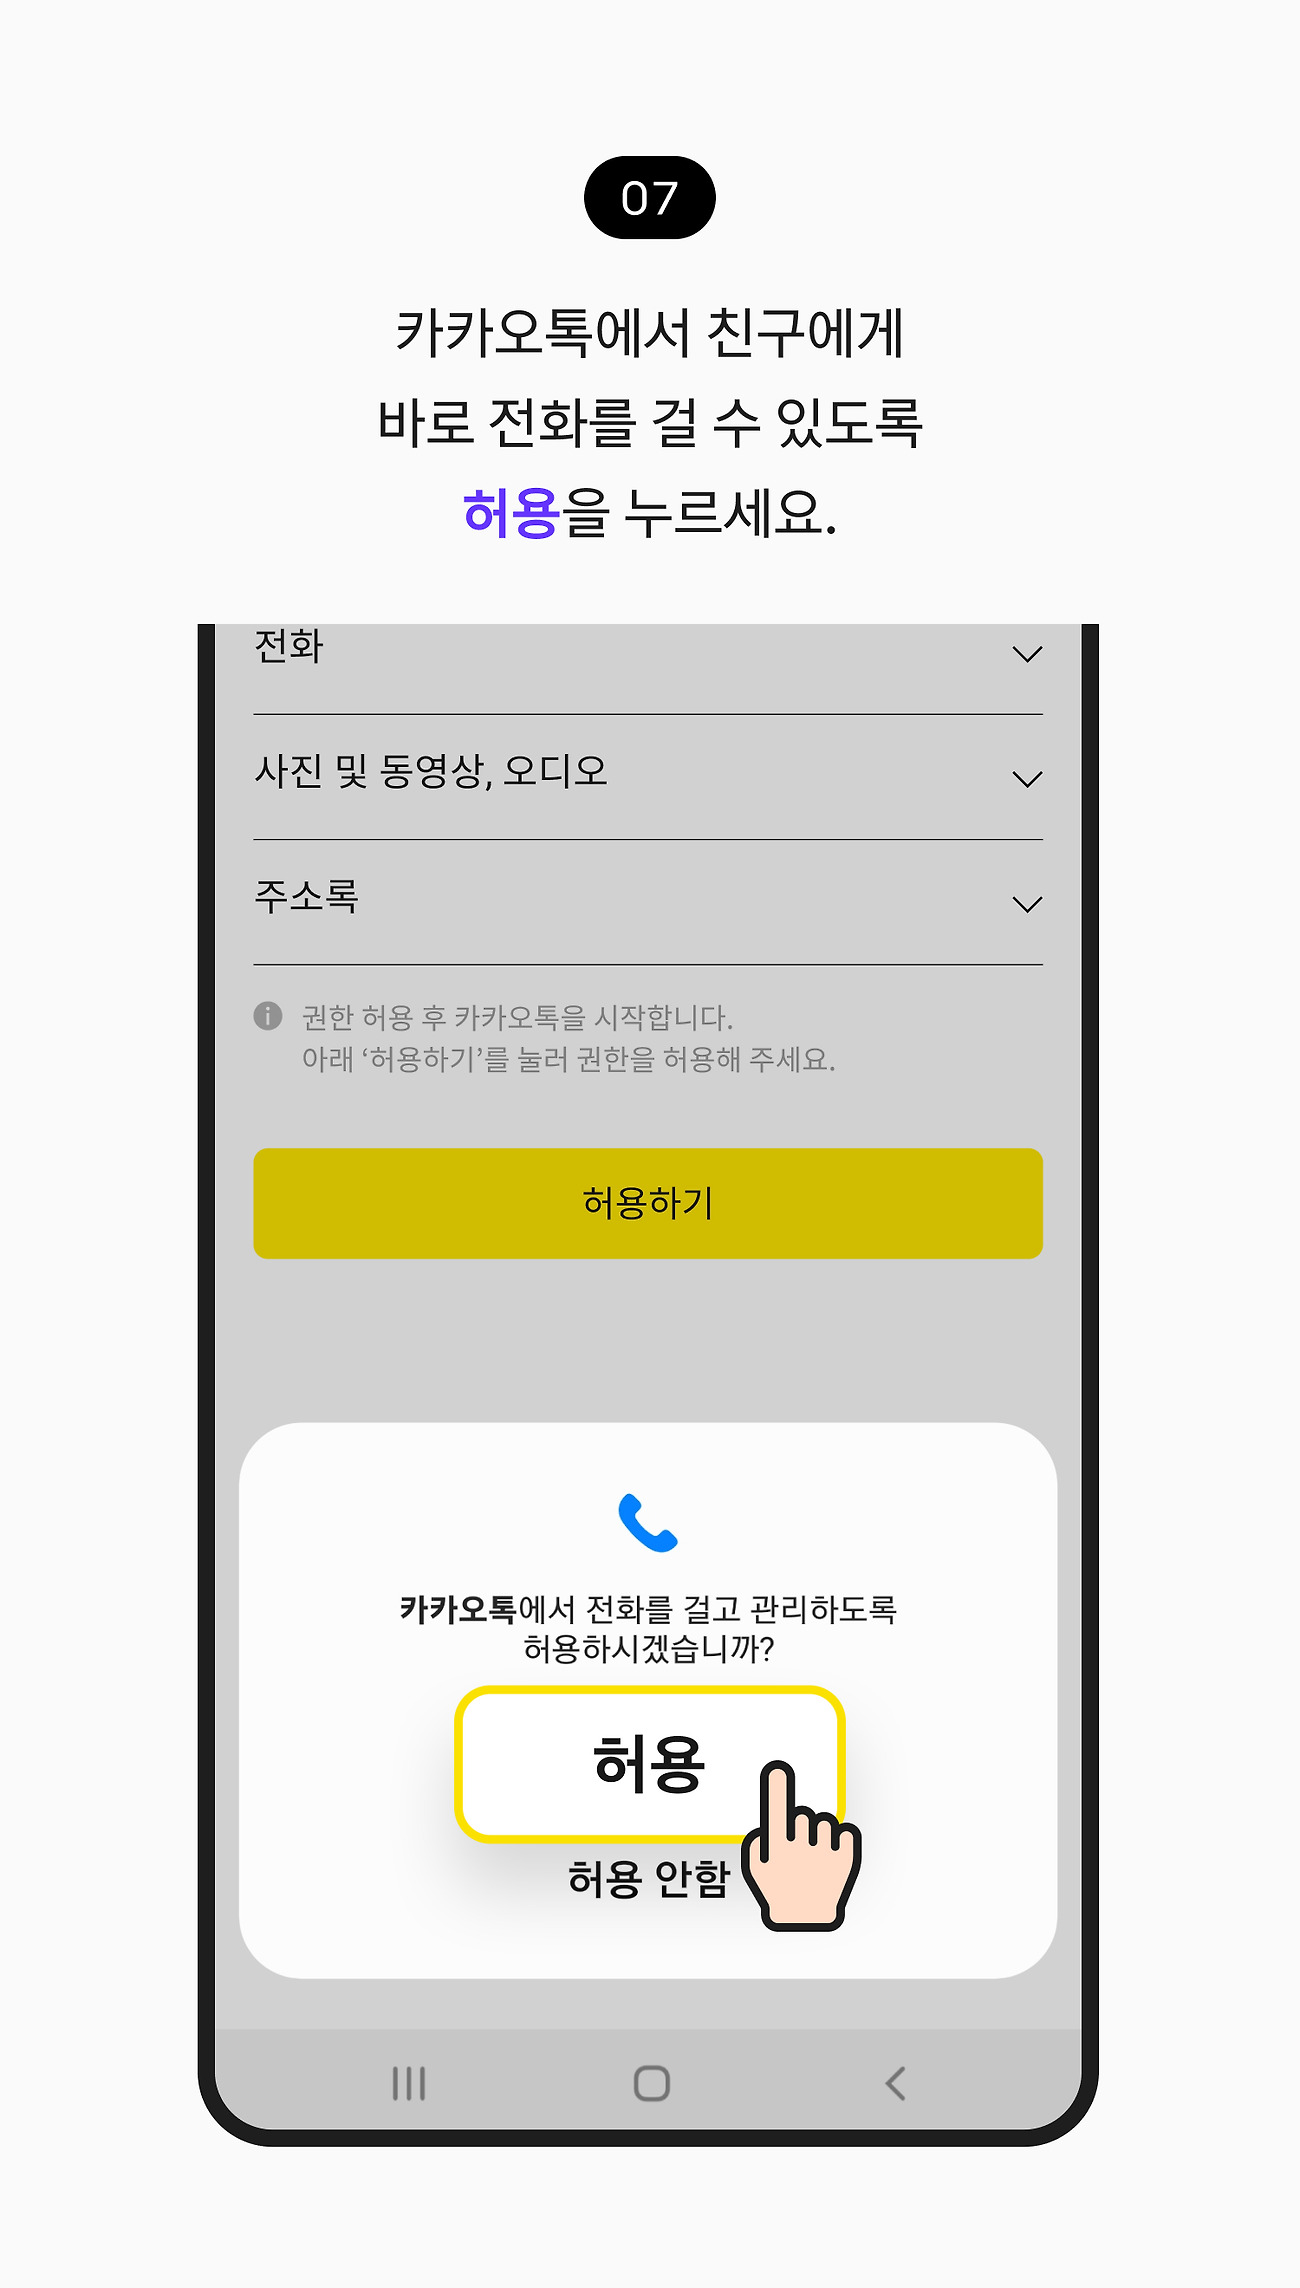 안드로이드 스마트폰에 설치하기 07. 카카오톡에서 친구에게 바로 전화를 걸 수 있도록 허용 버튼을 누르세요.